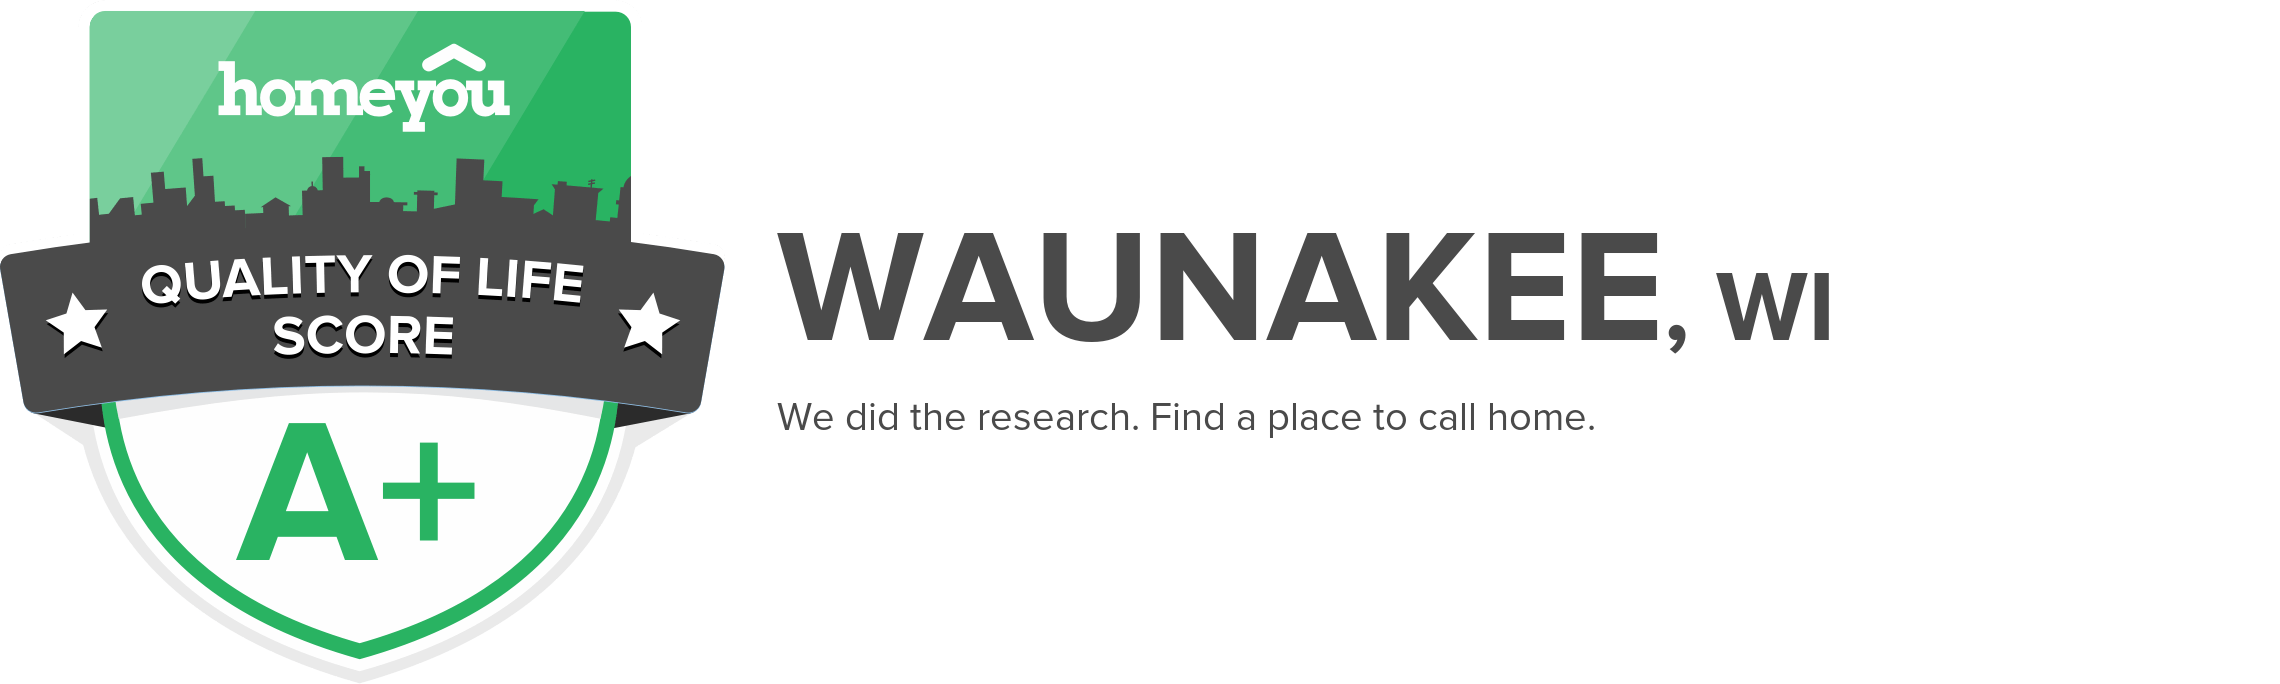 Waunakee, WI